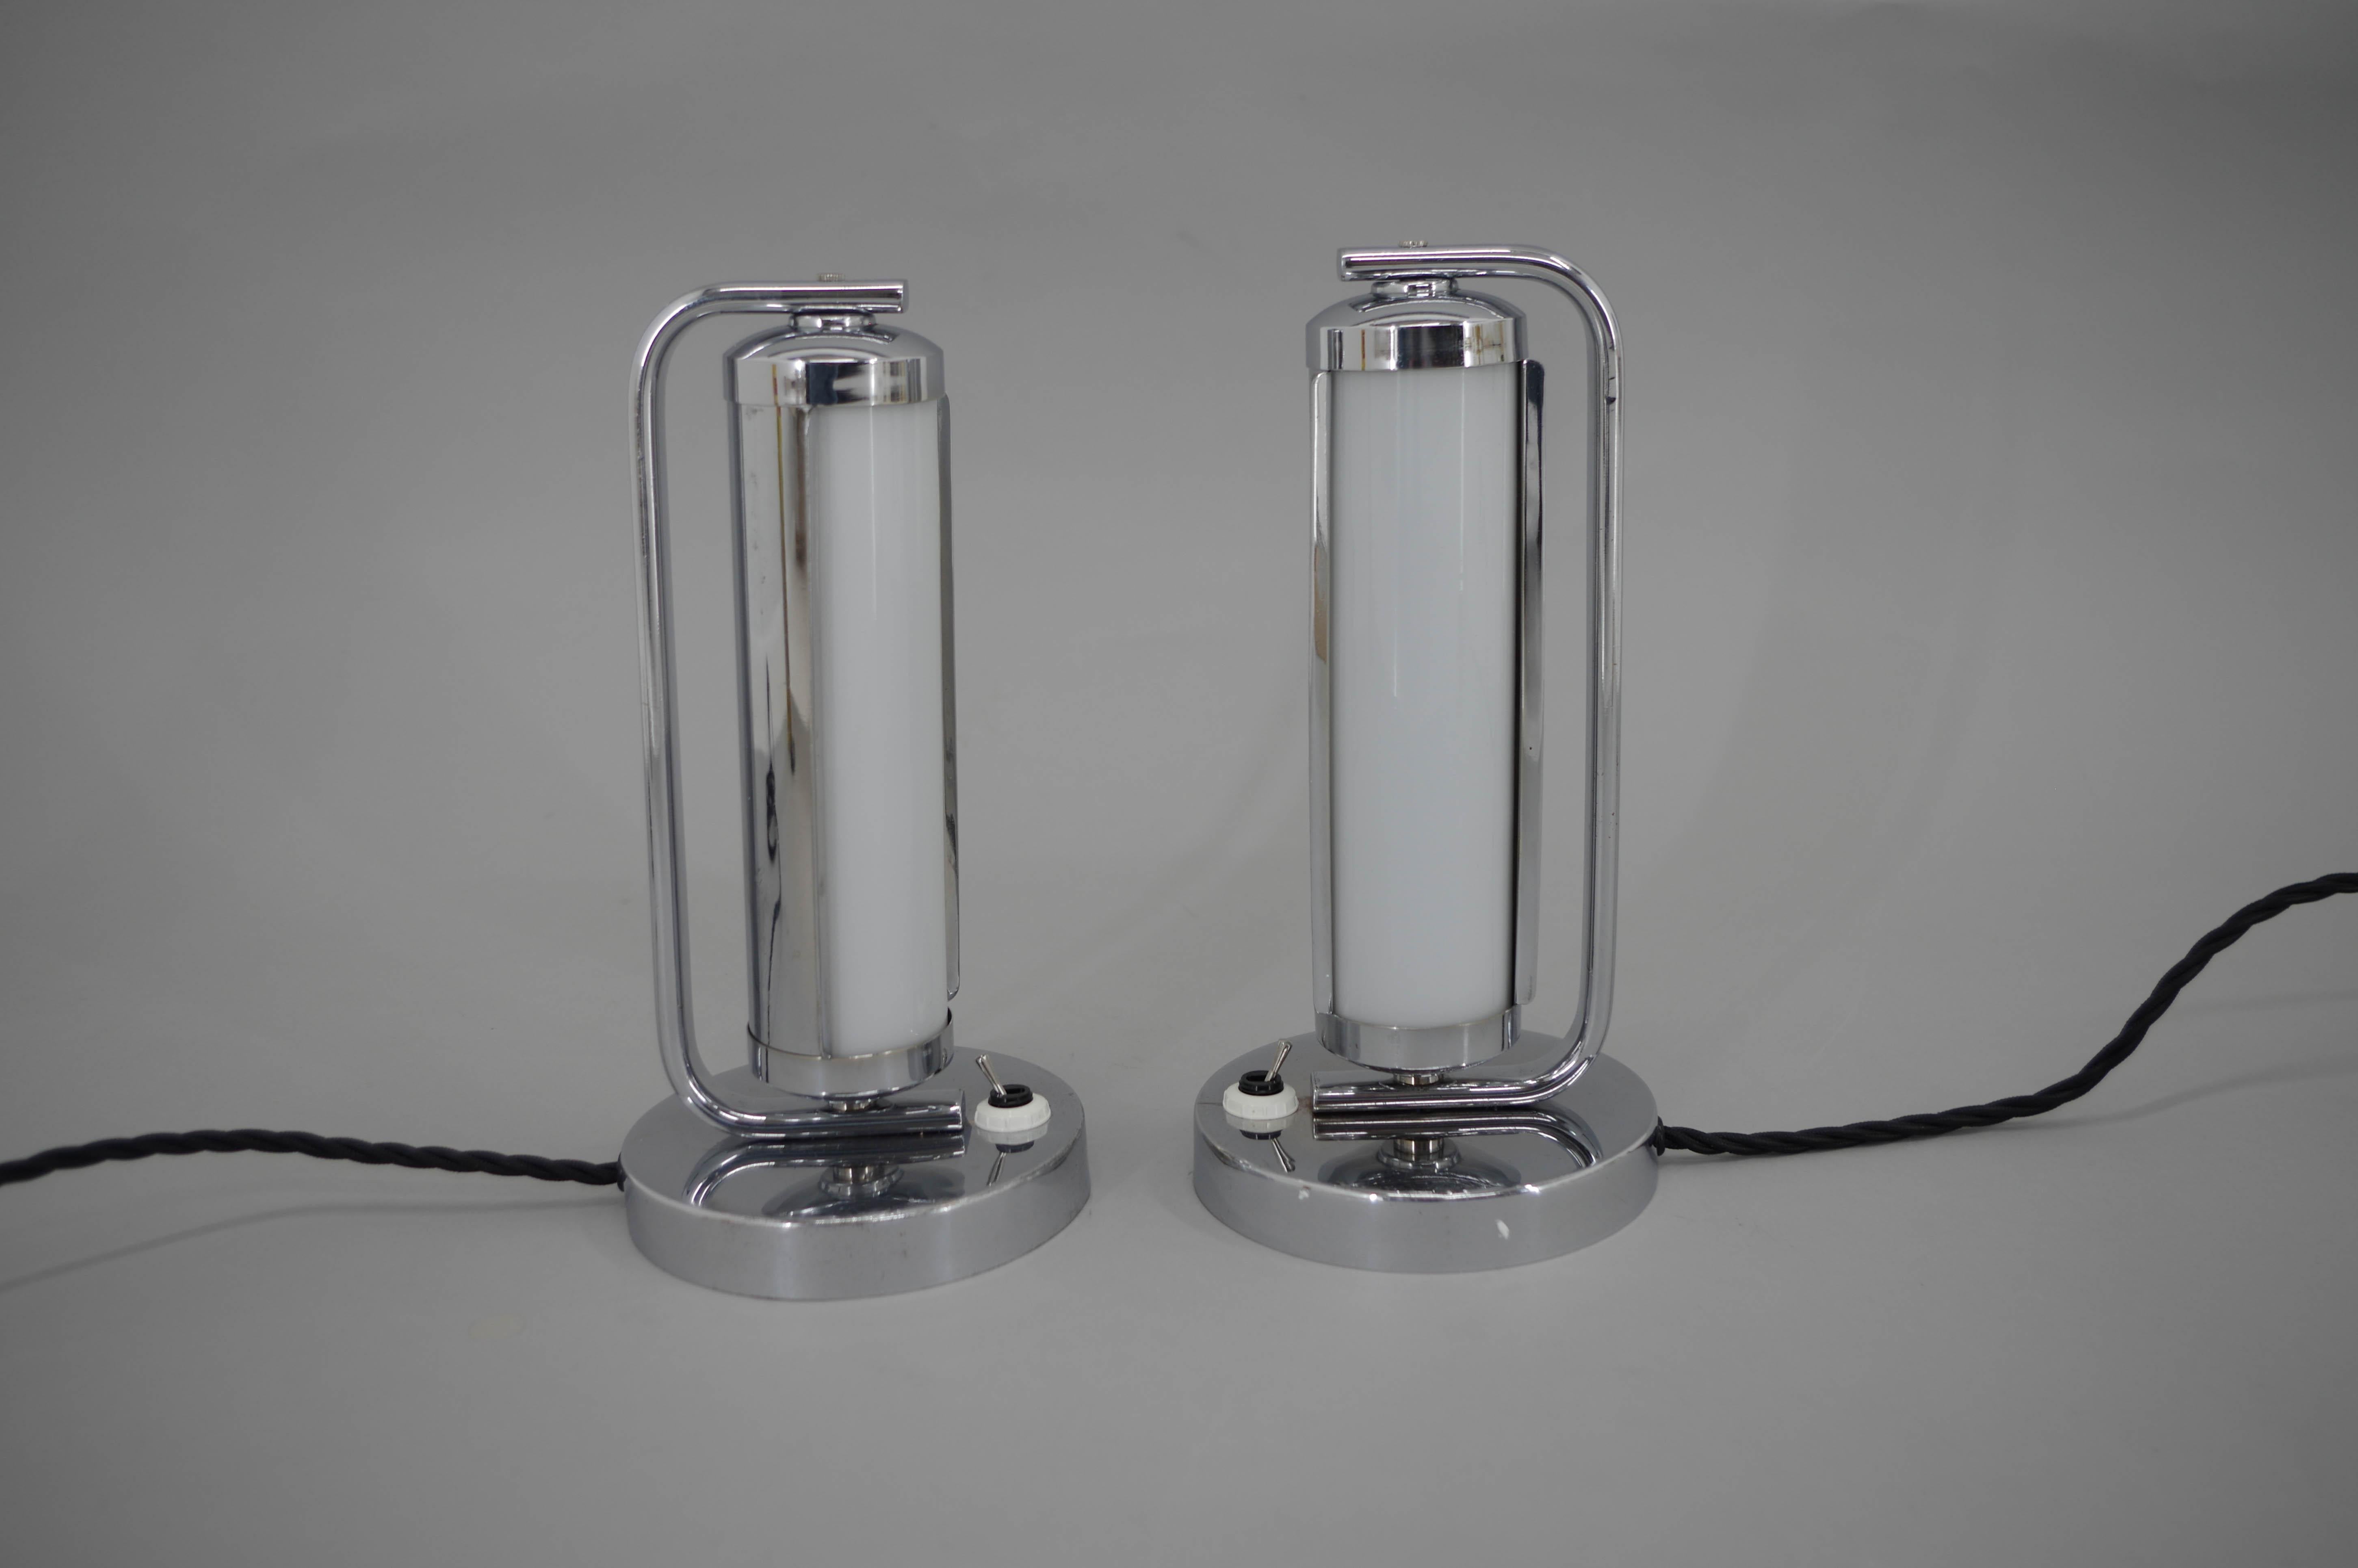 Deux lampes de table Art Déco/Fonctionnaliste avec verre tubulaire et couvercle chromé rotatif.
Restauré, nettoyé, poli, recâblé
1x40W, ampoule E12-E14
Adaptateur pour prise américaine inclus